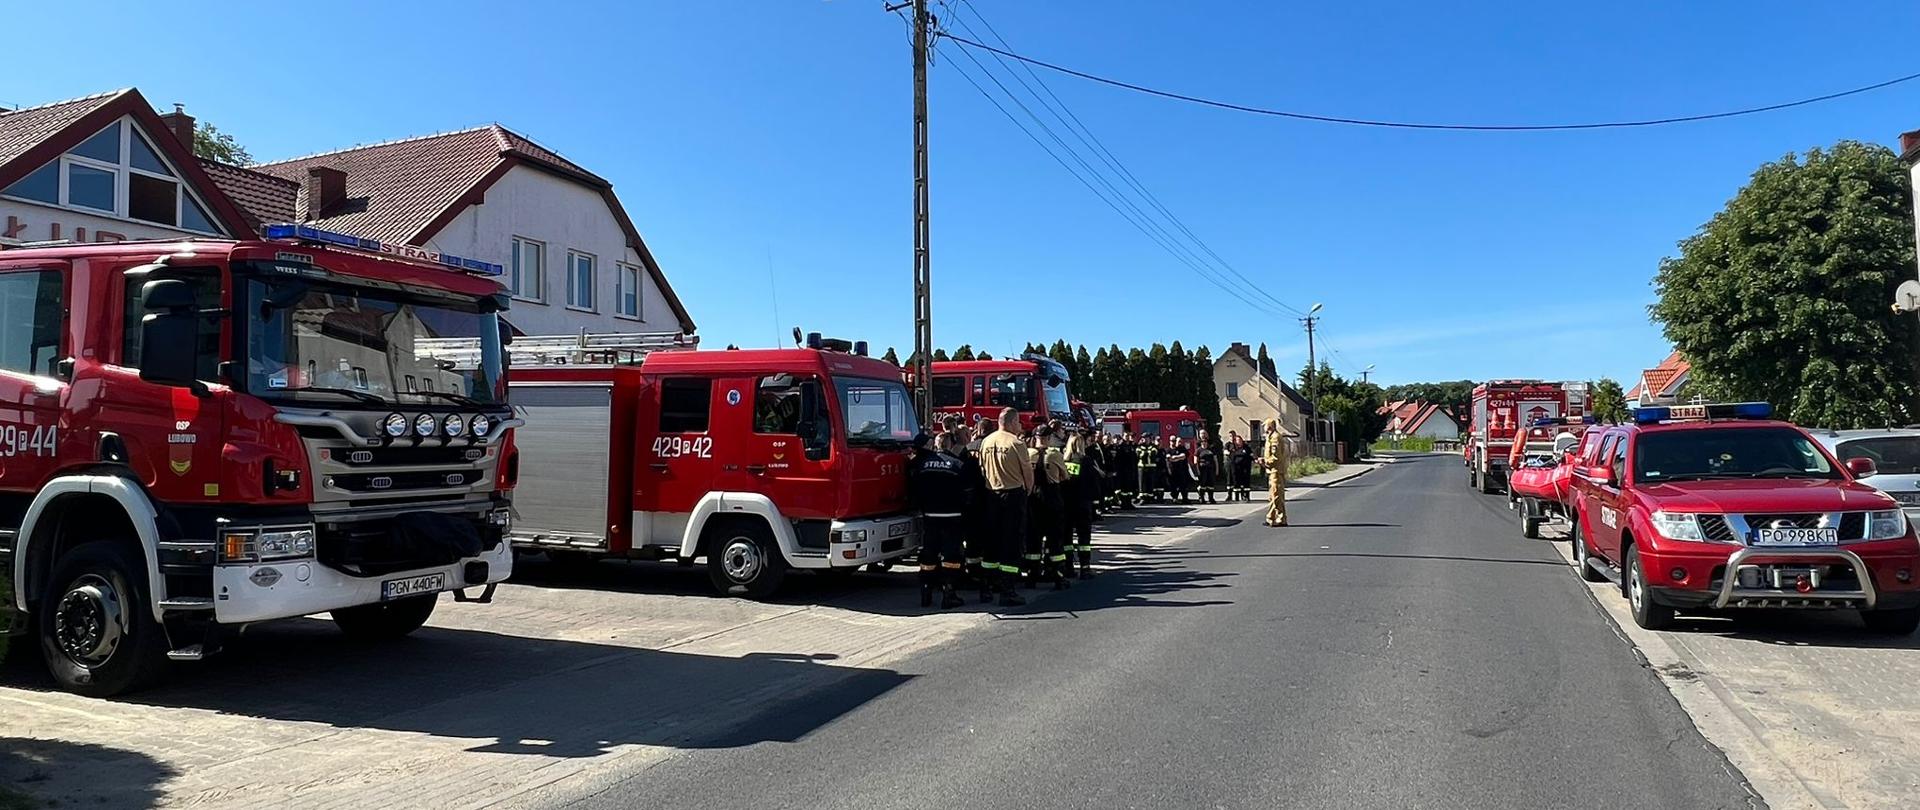 Na zdjęciu widać samochody pożarnicze oraz strażaków w miejscu koncentracji przy remizie OSP Łubowo. Dowódca zabezpieczenia omawia plan zabezpieczenia